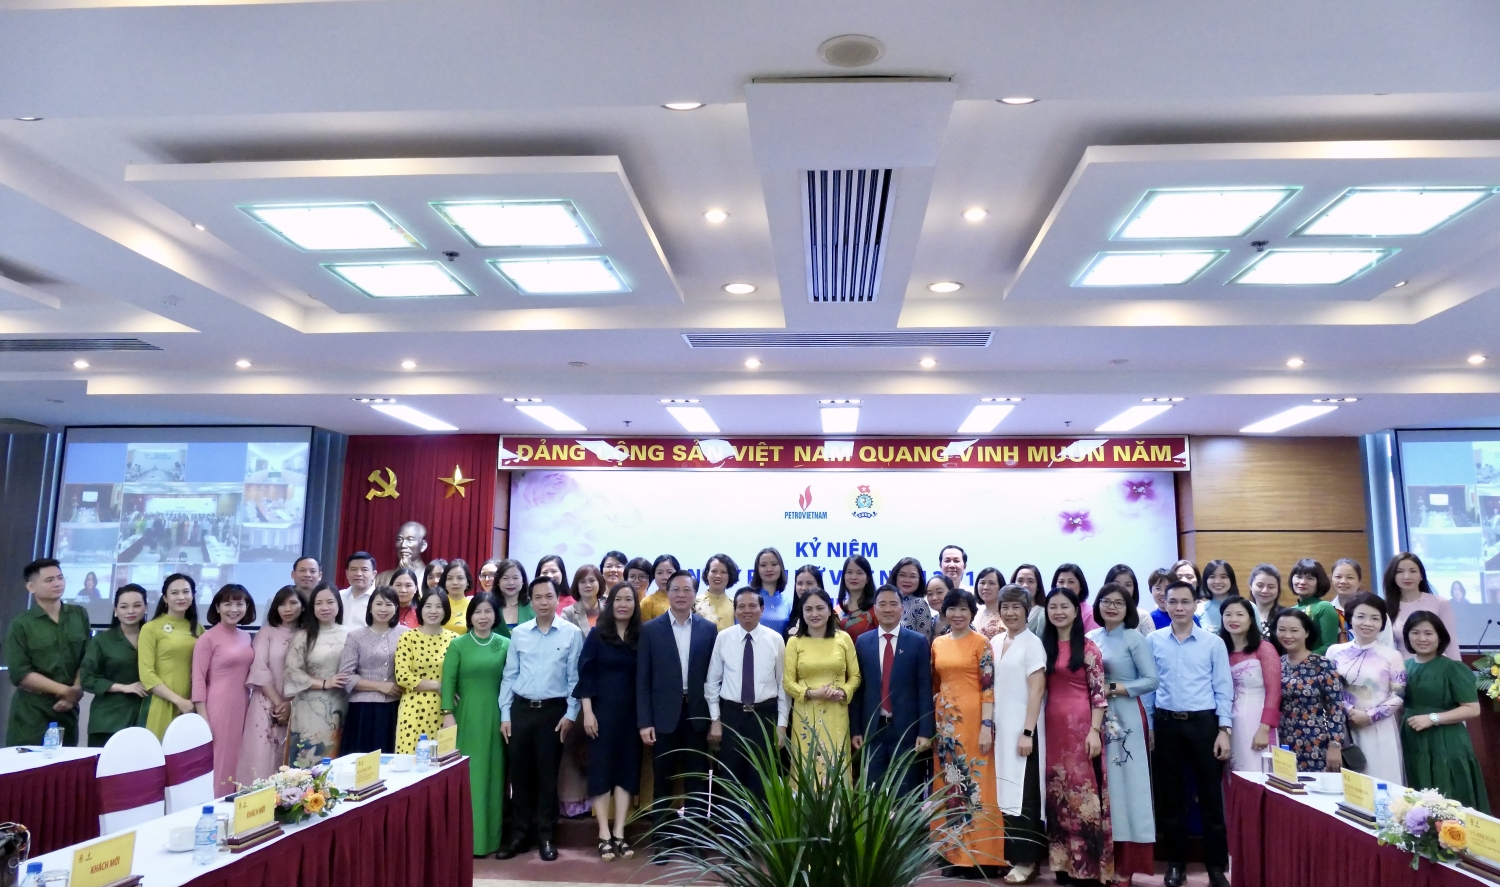 Công đoàn Dầu khí Việt Nam tổ chức nói chuyện chuyên đề “Phụ nữ thời kỳ công nghiệp 4.0”